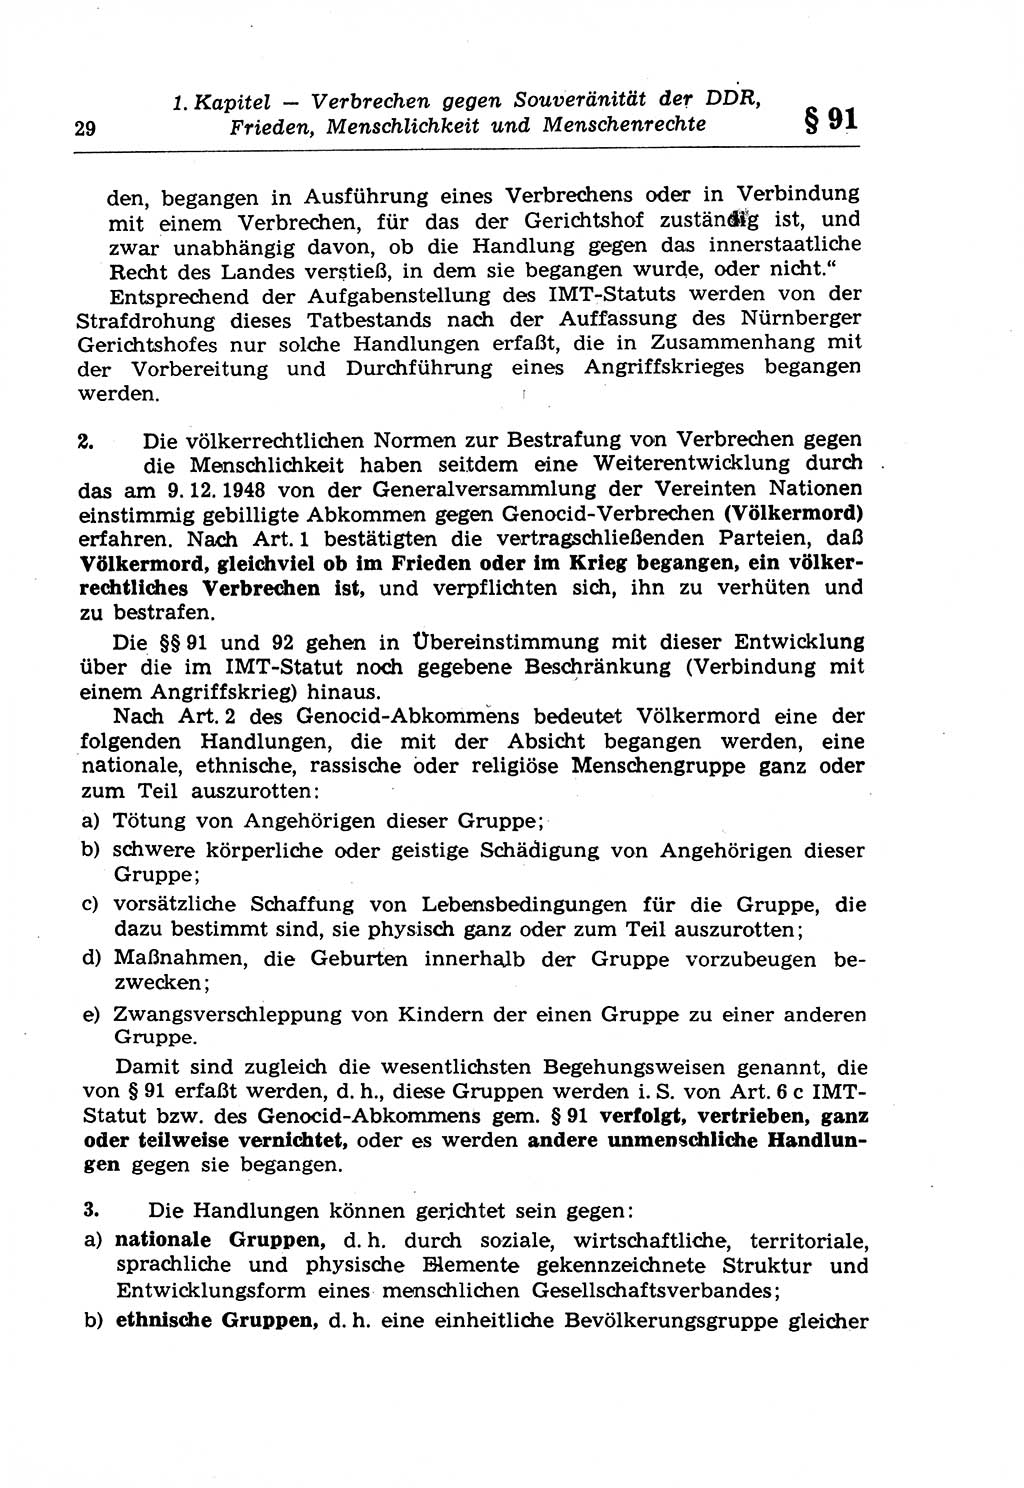 Strafrecht der Deutschen Demokratischen Republik (DDR), Lehrkommentar zum Strafgesetzbuch (StGB), Besonderer Teil 1970, Seite 29 (Strafr. DDR Lehrkomm. StGB BT 1970, S. 29)